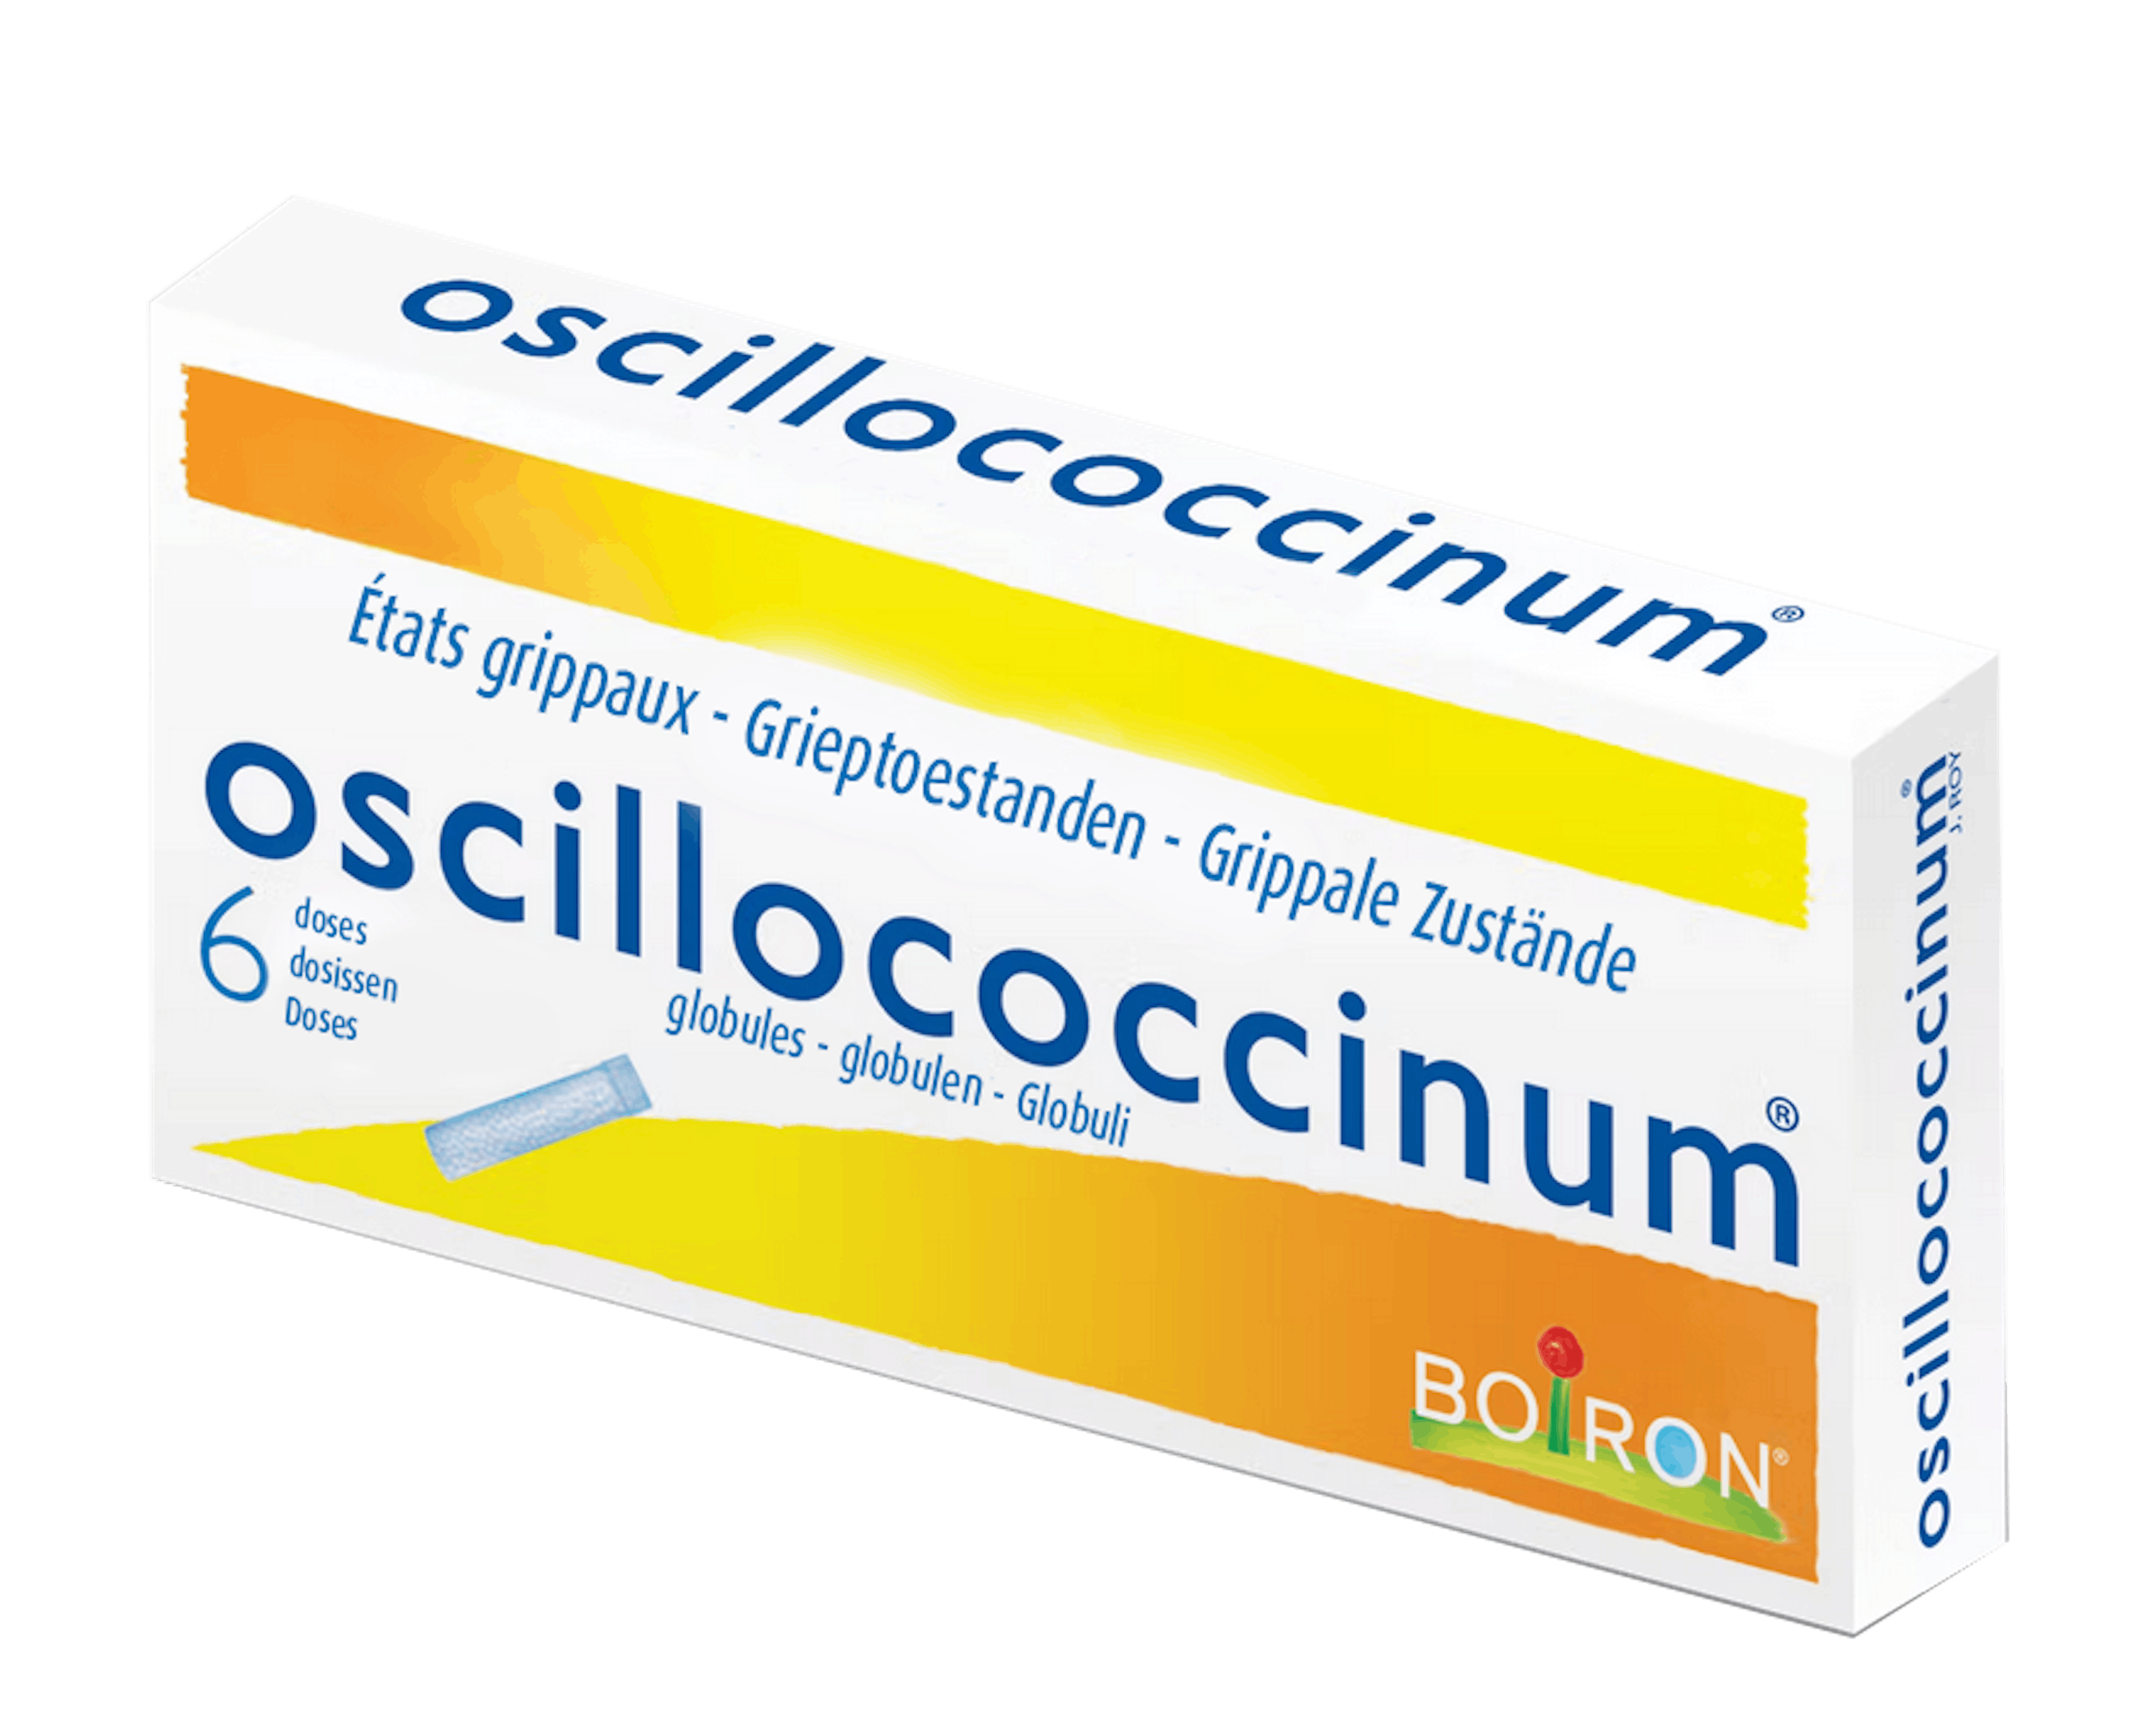 oscillococcinum - onze homeopathische geneesmiddelen specialiteiten - Rillingen - Spierpijn - Koorts